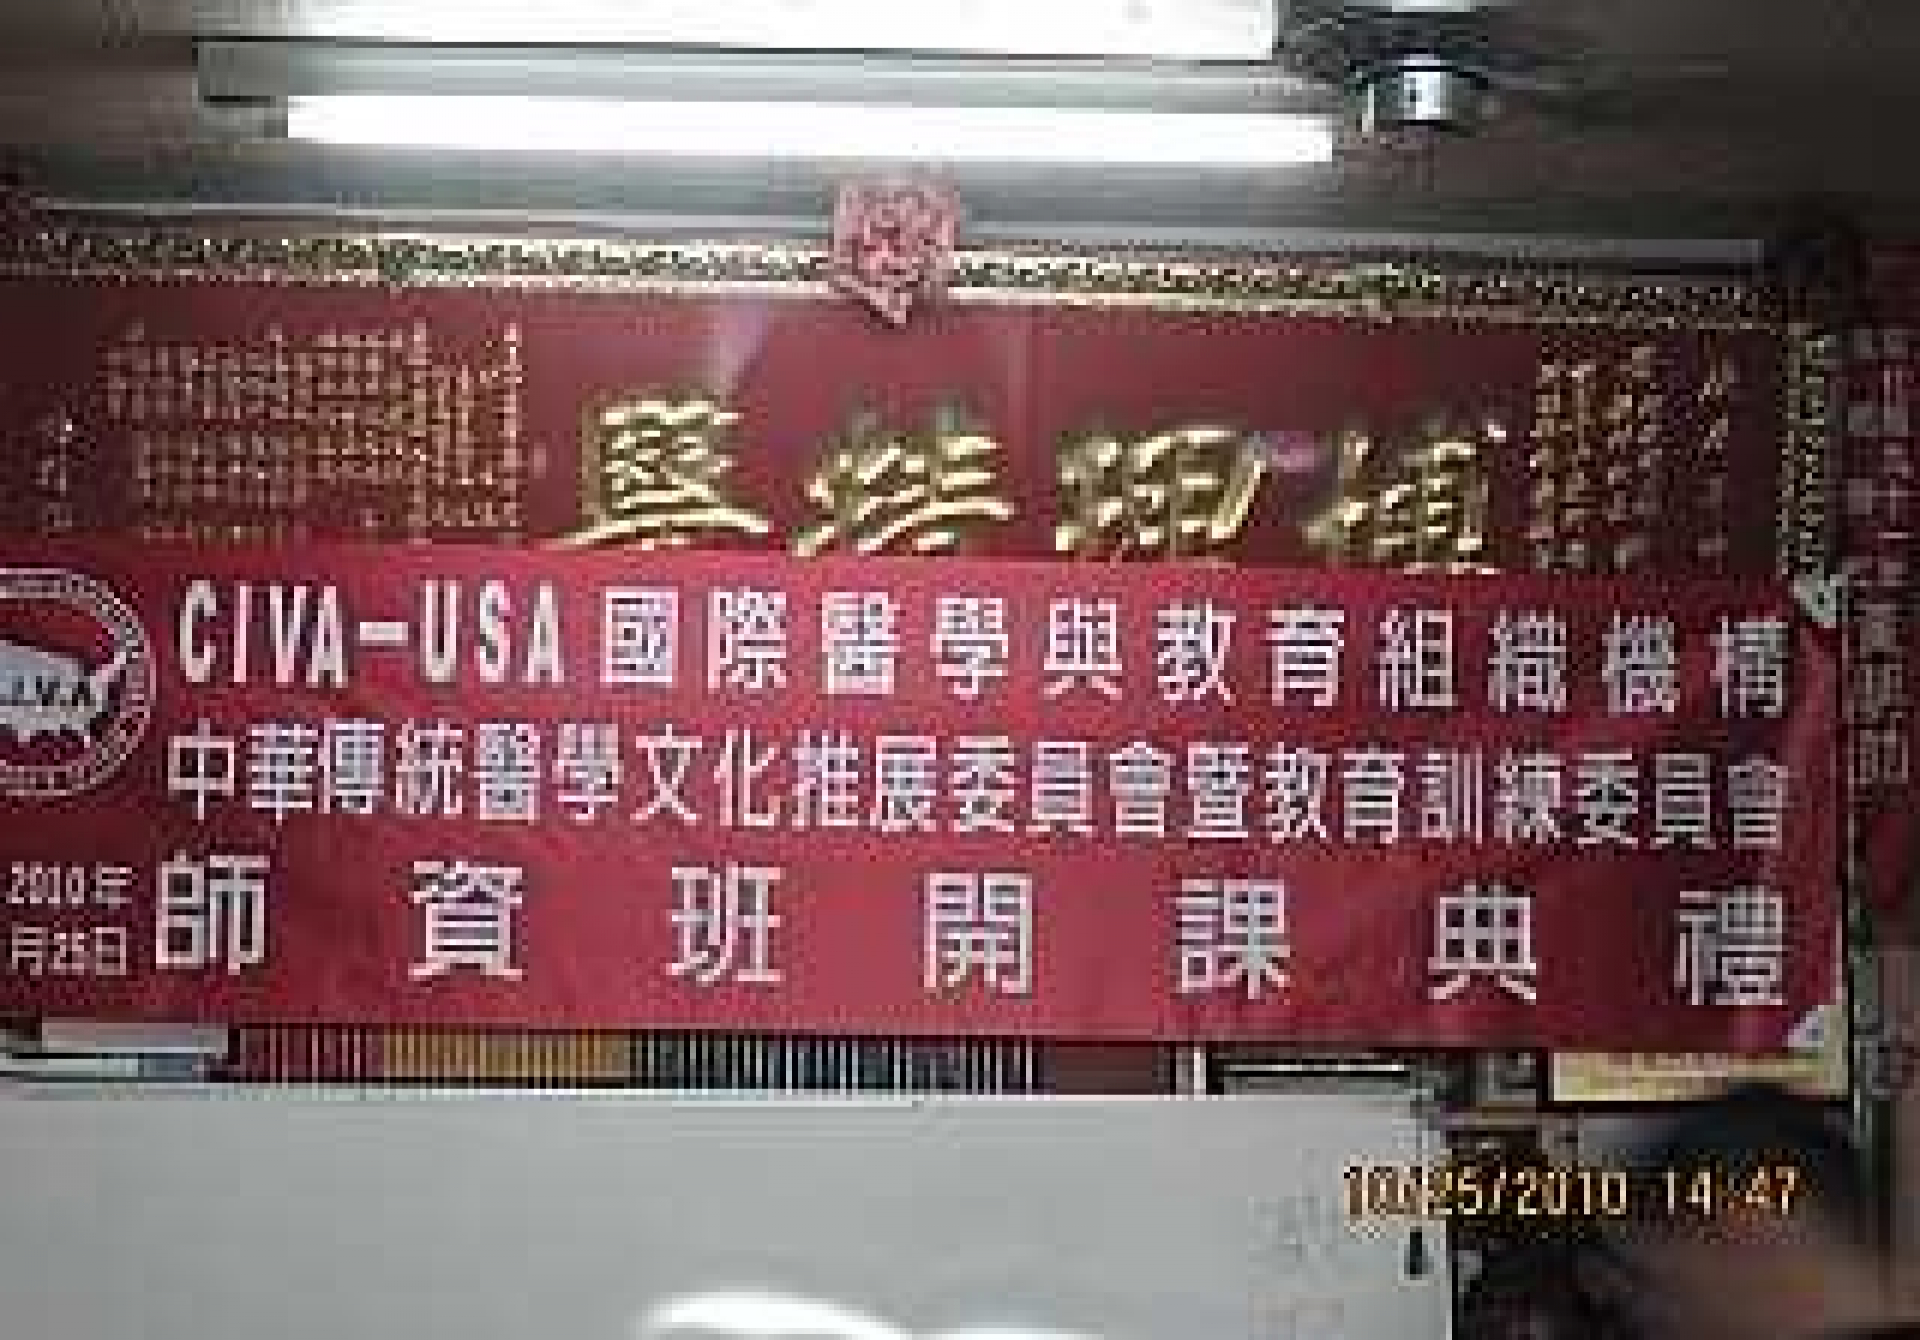  中華傳統醫學療法講師資格班開班典禮11月25日 